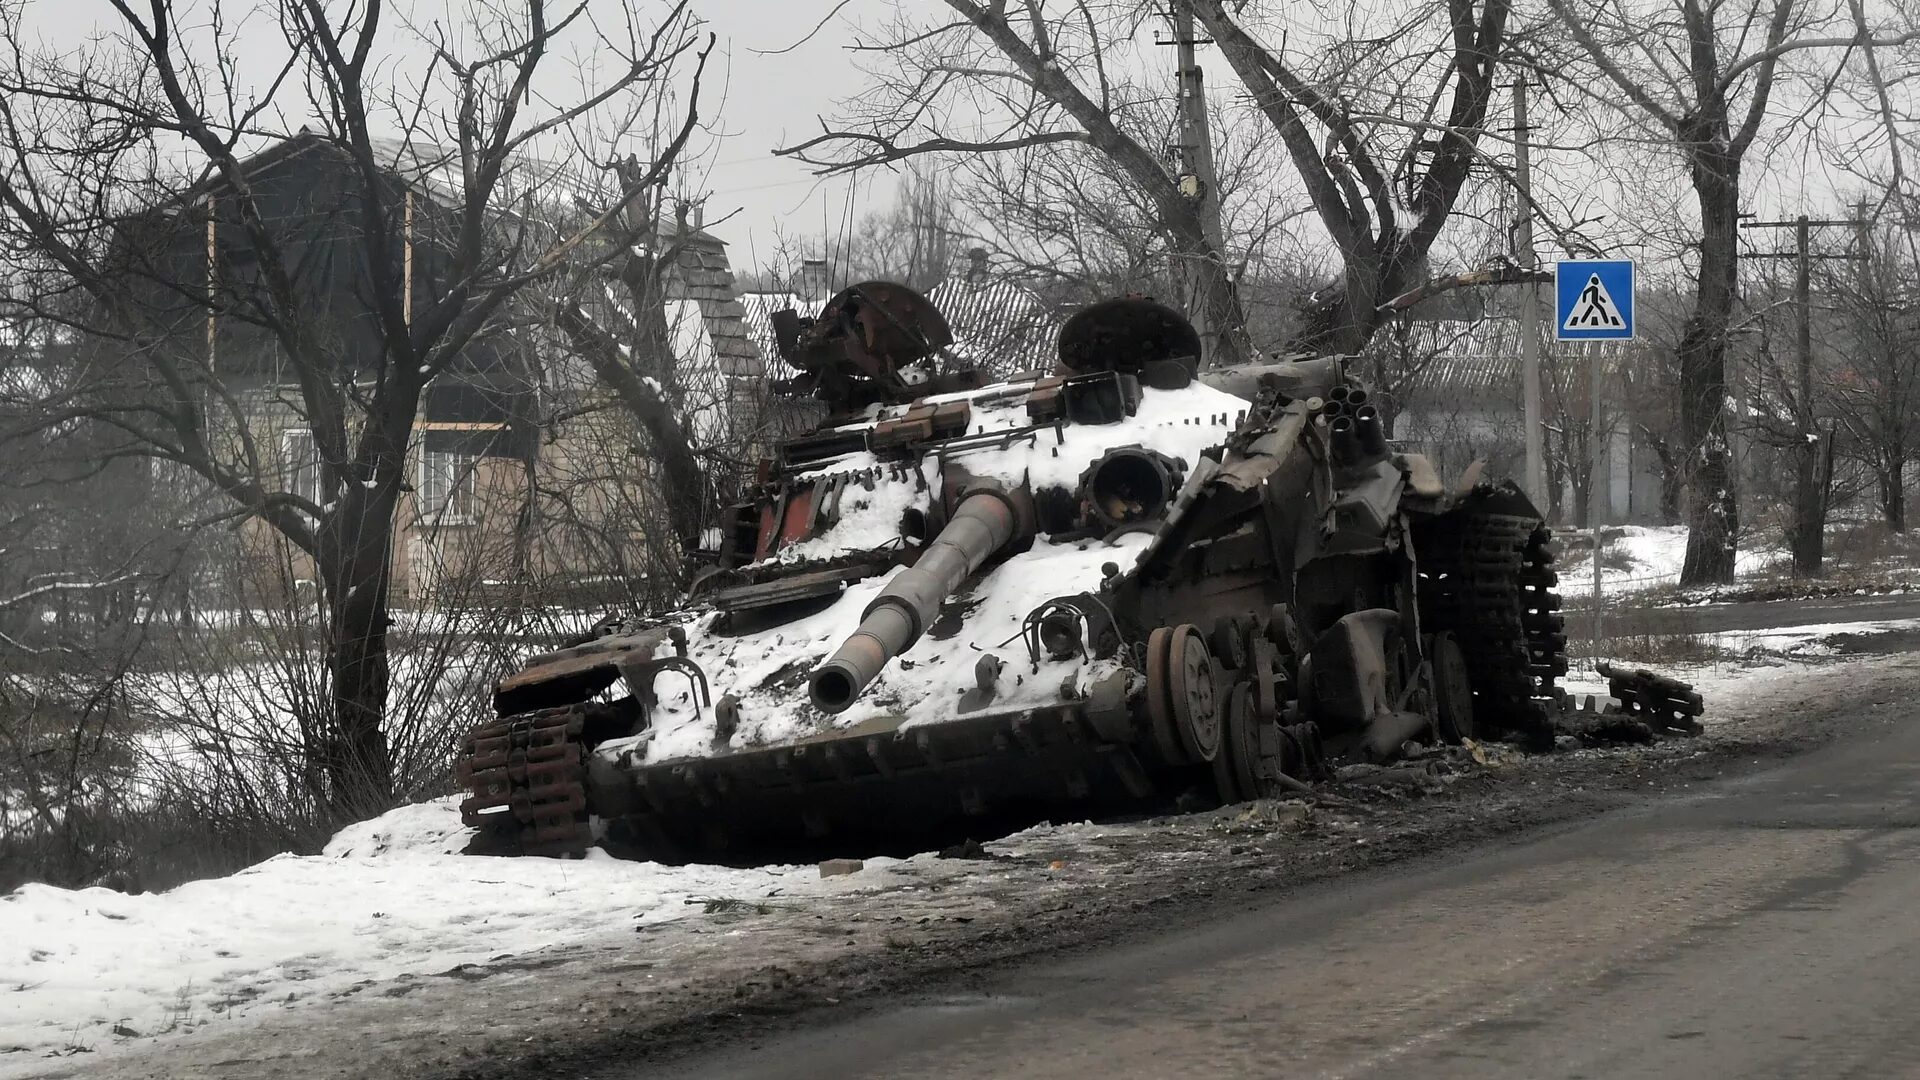 Ukraine's destroyed T-64 tank